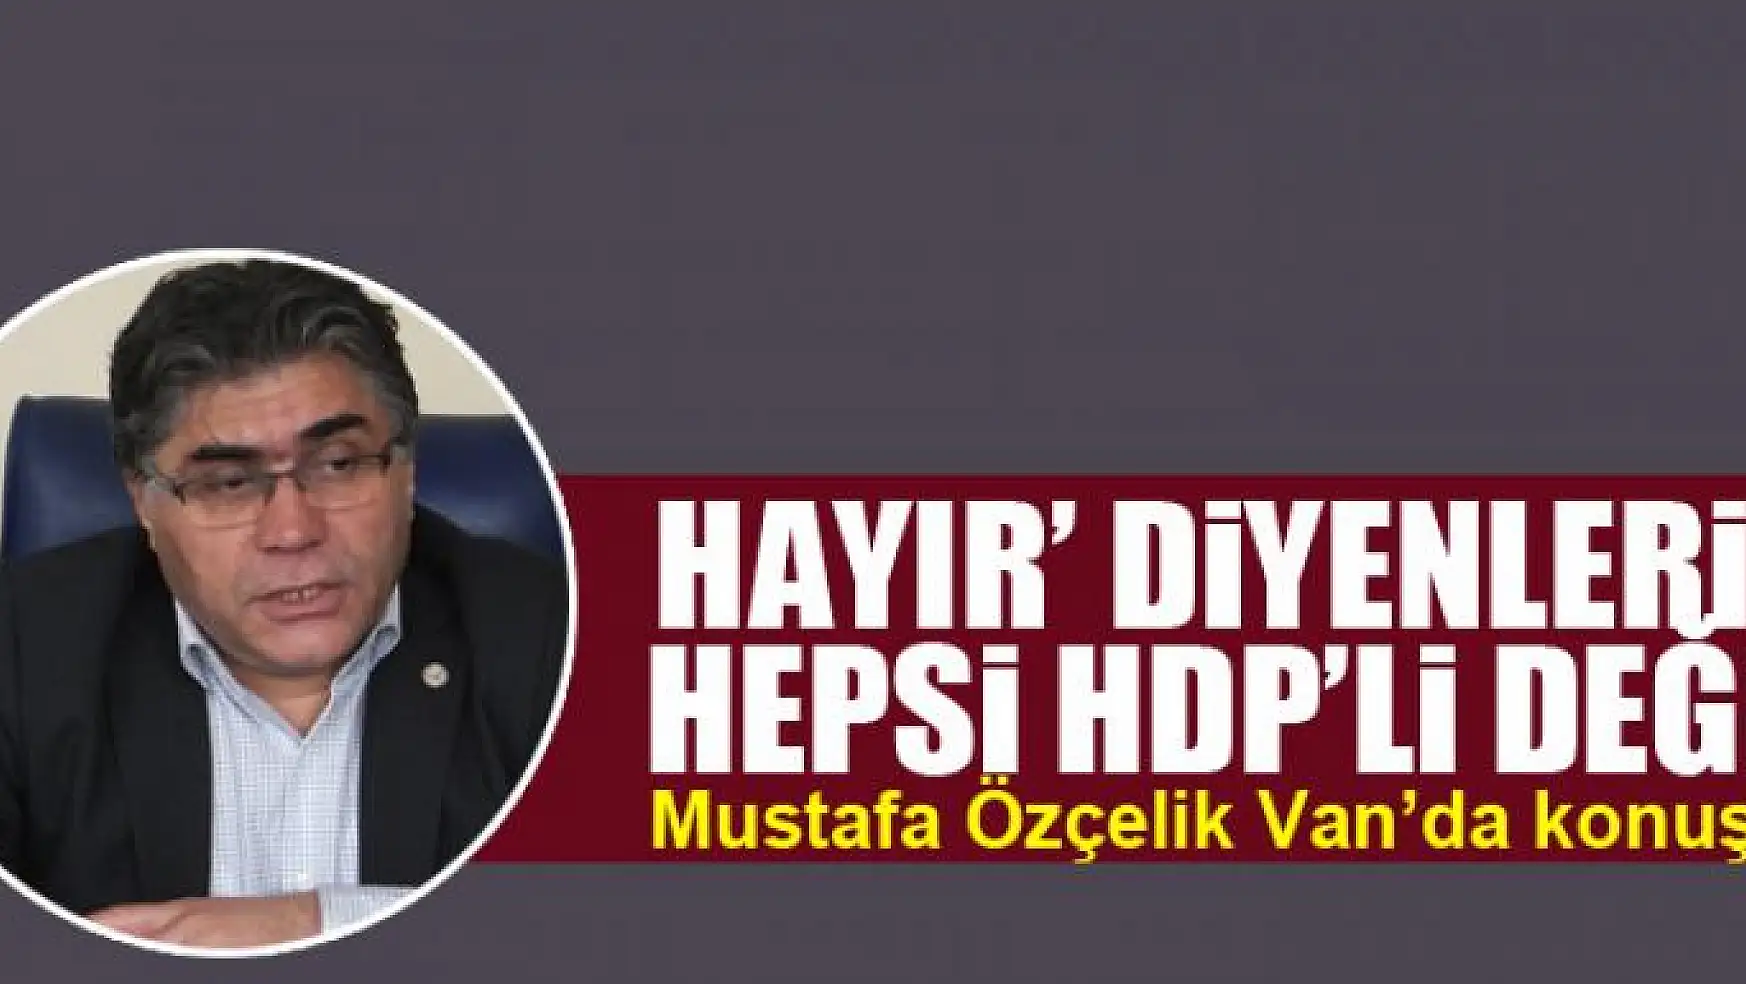 'Hayır' diyenlerin hepsi HDP'li değil